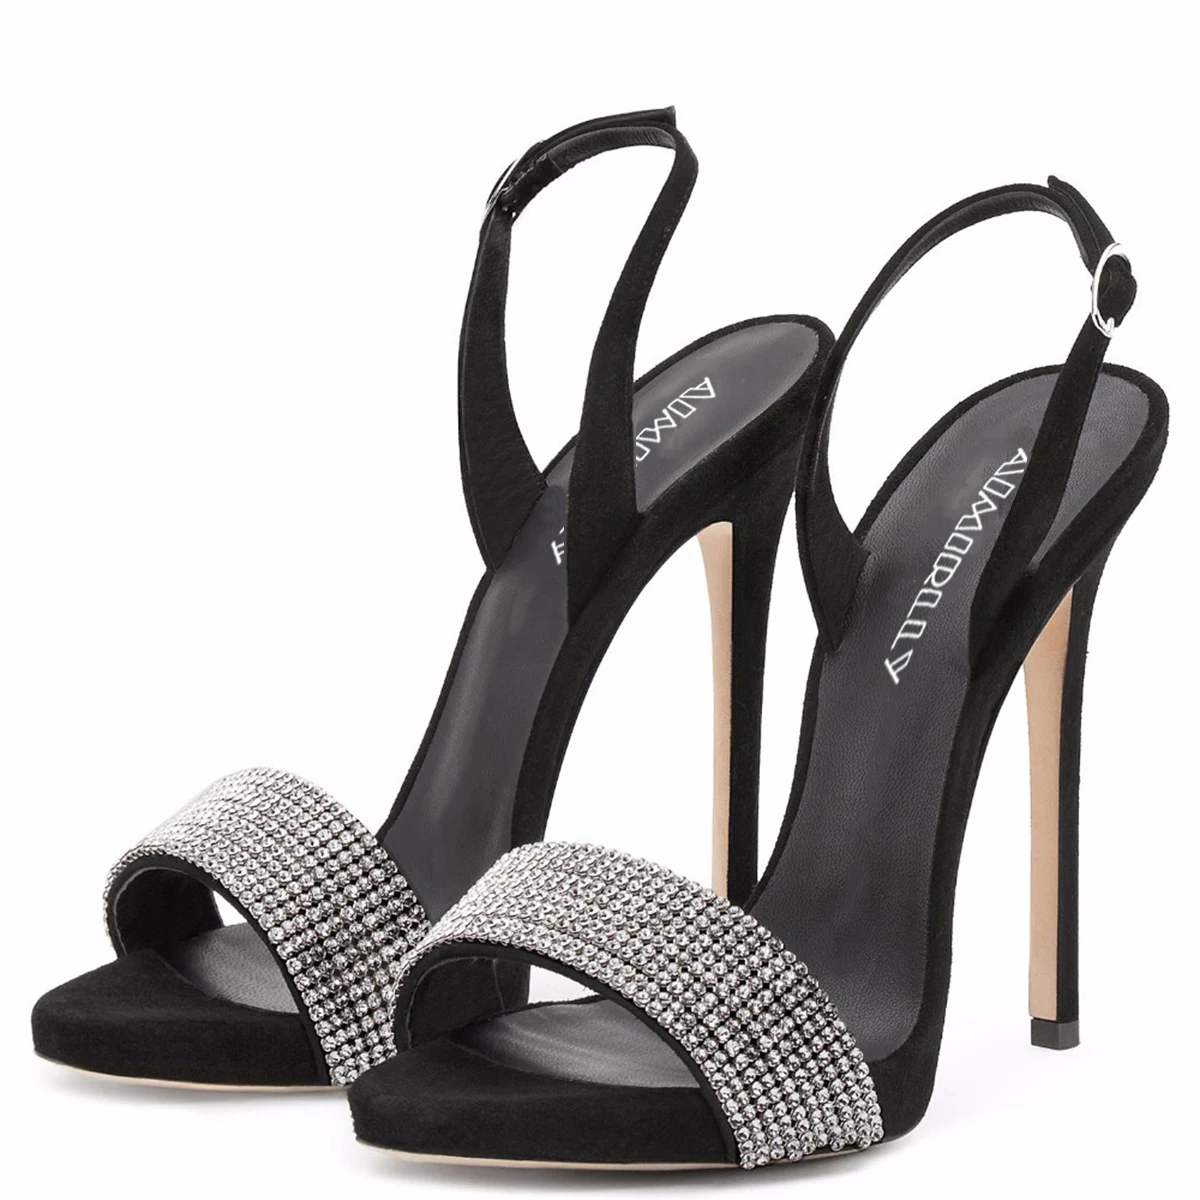 Aimirlly/Женская обувь; босоножки на высоком каблуке-шпильке с открытым носком; украшение из горного хрусталя; женские вечерние свадебные туфли на каблуке